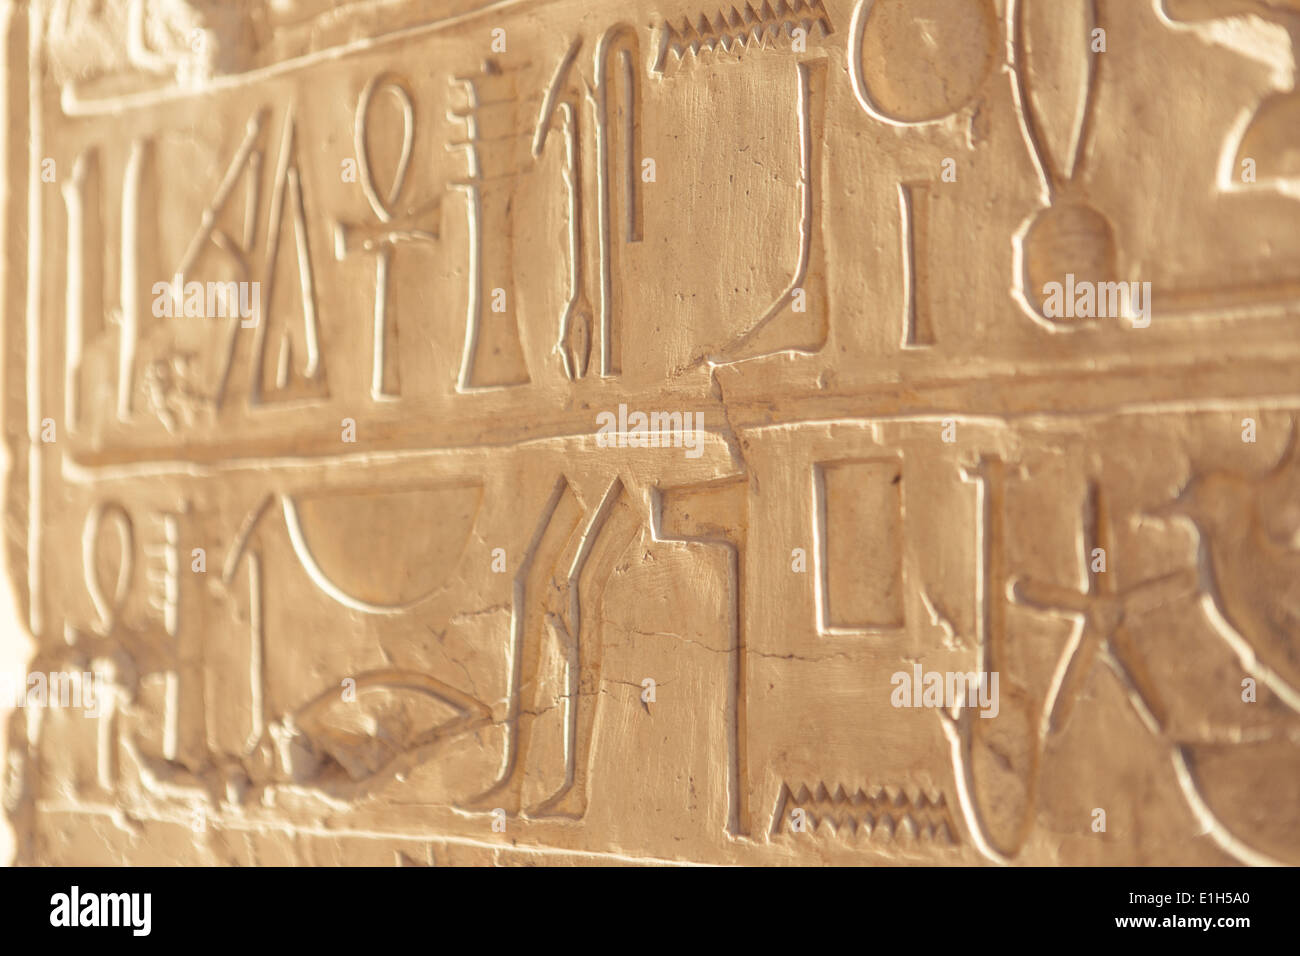 Les hiéroglyphes gravés dans la pierre, Luxor, Egypte Banque D'Images